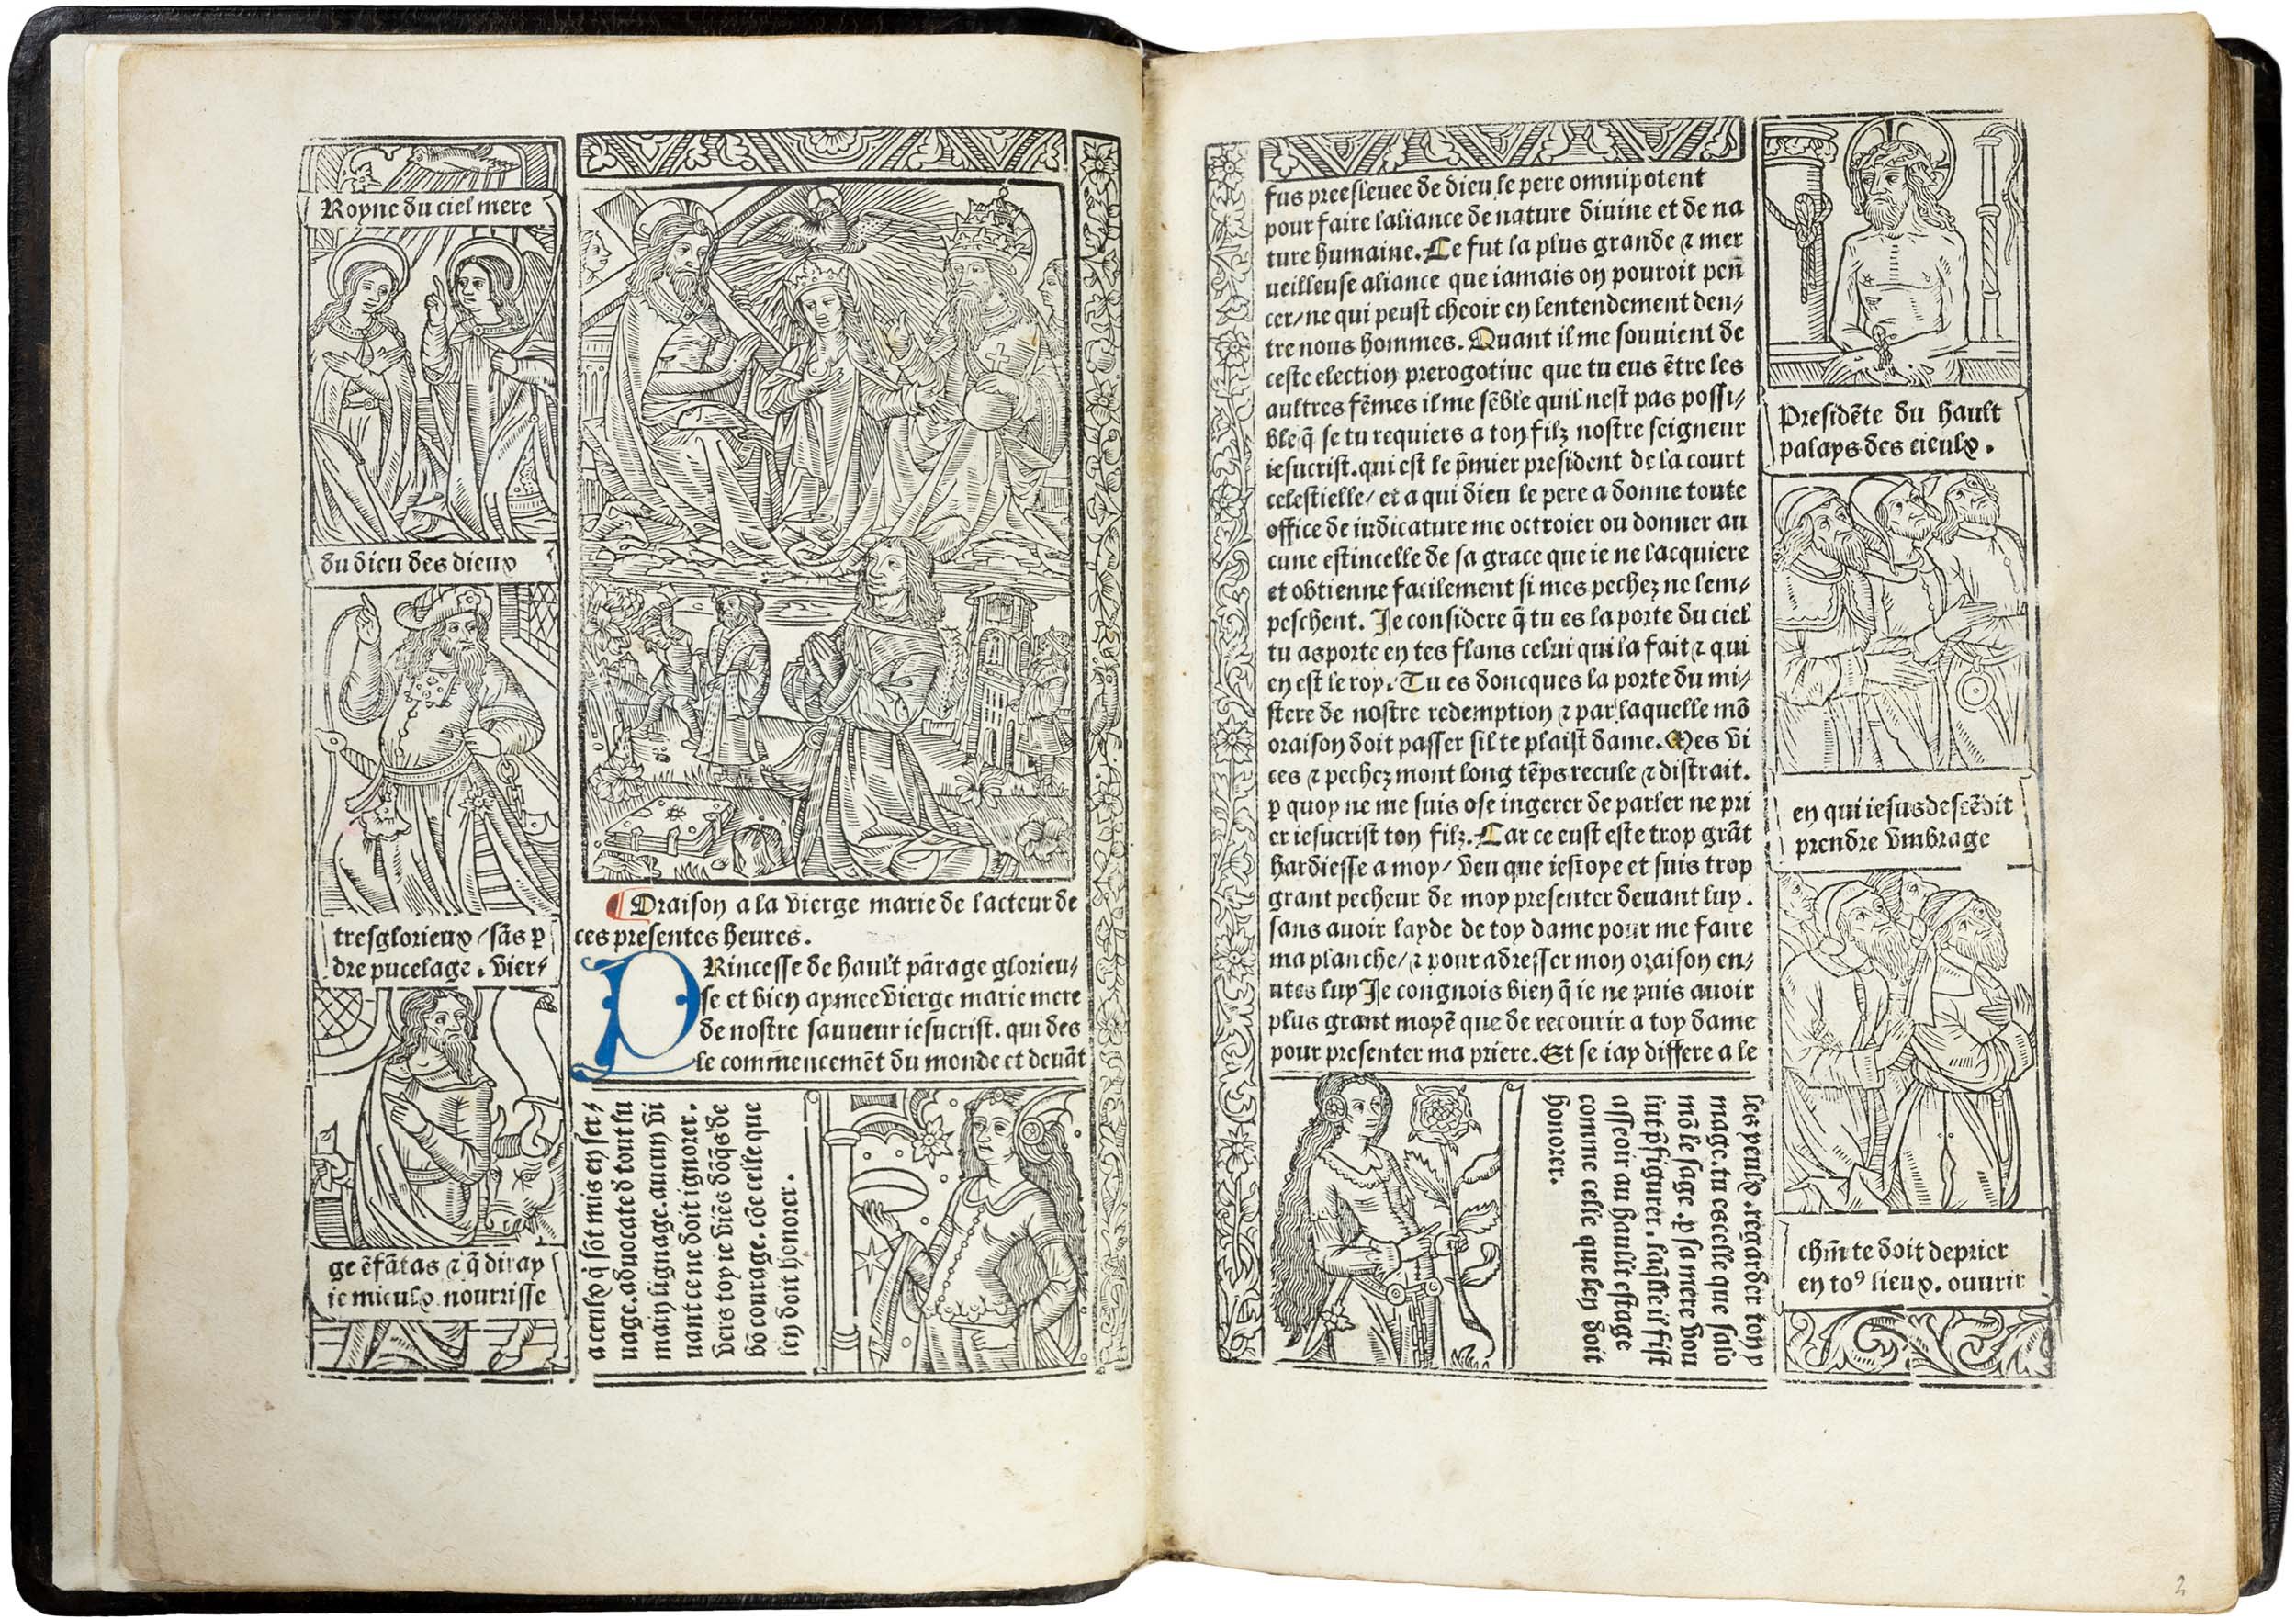 Grandes-heures-royales-verard-1488-1489-printed-book-of-hours-horae-bmv-4.jpg